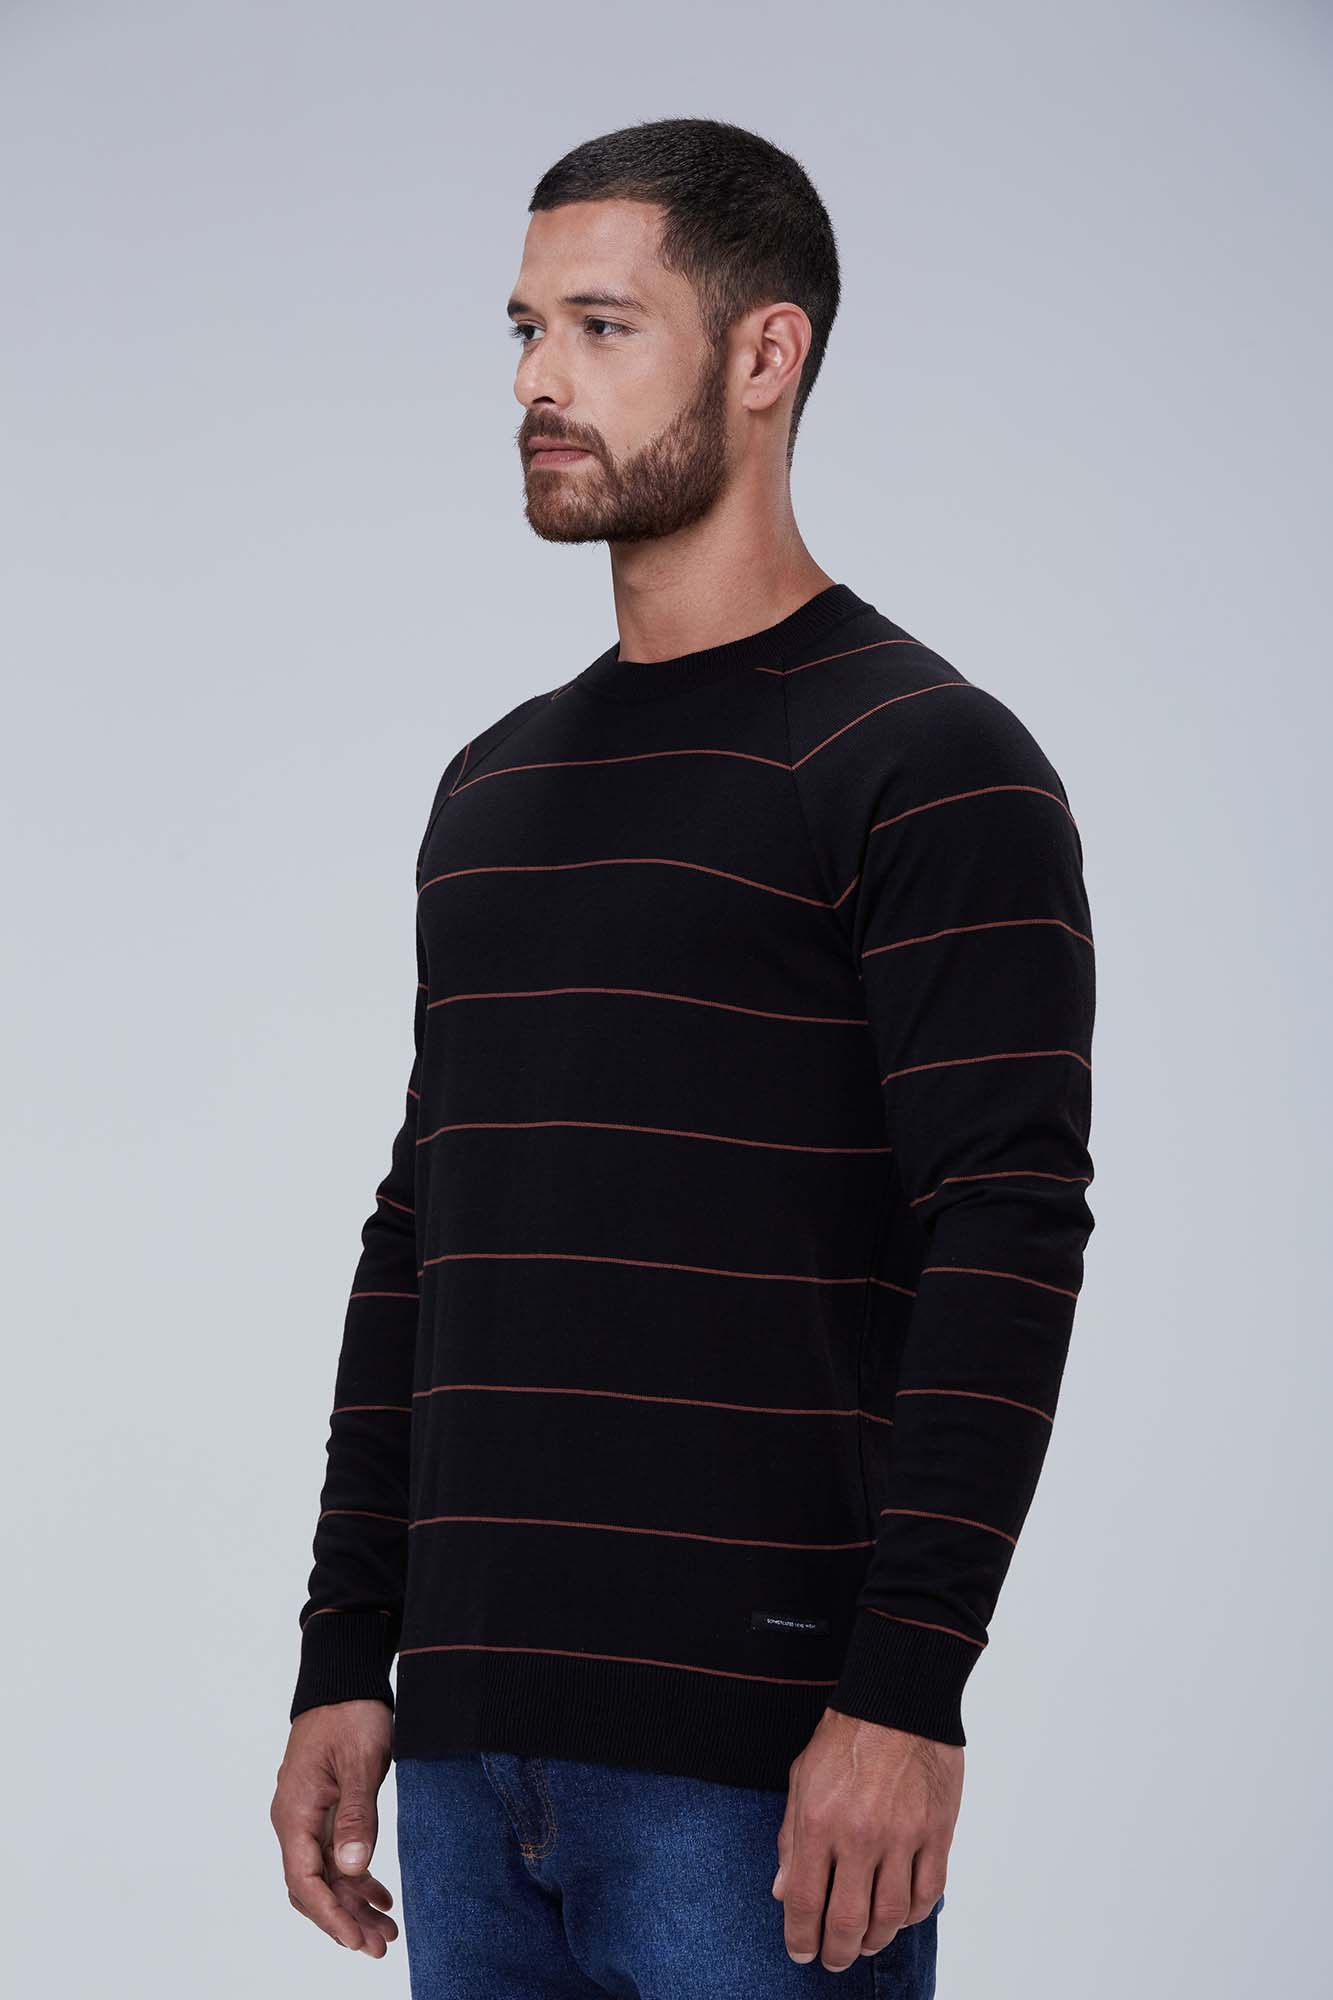 Suéter Mini Stripes Preto e Caramelo